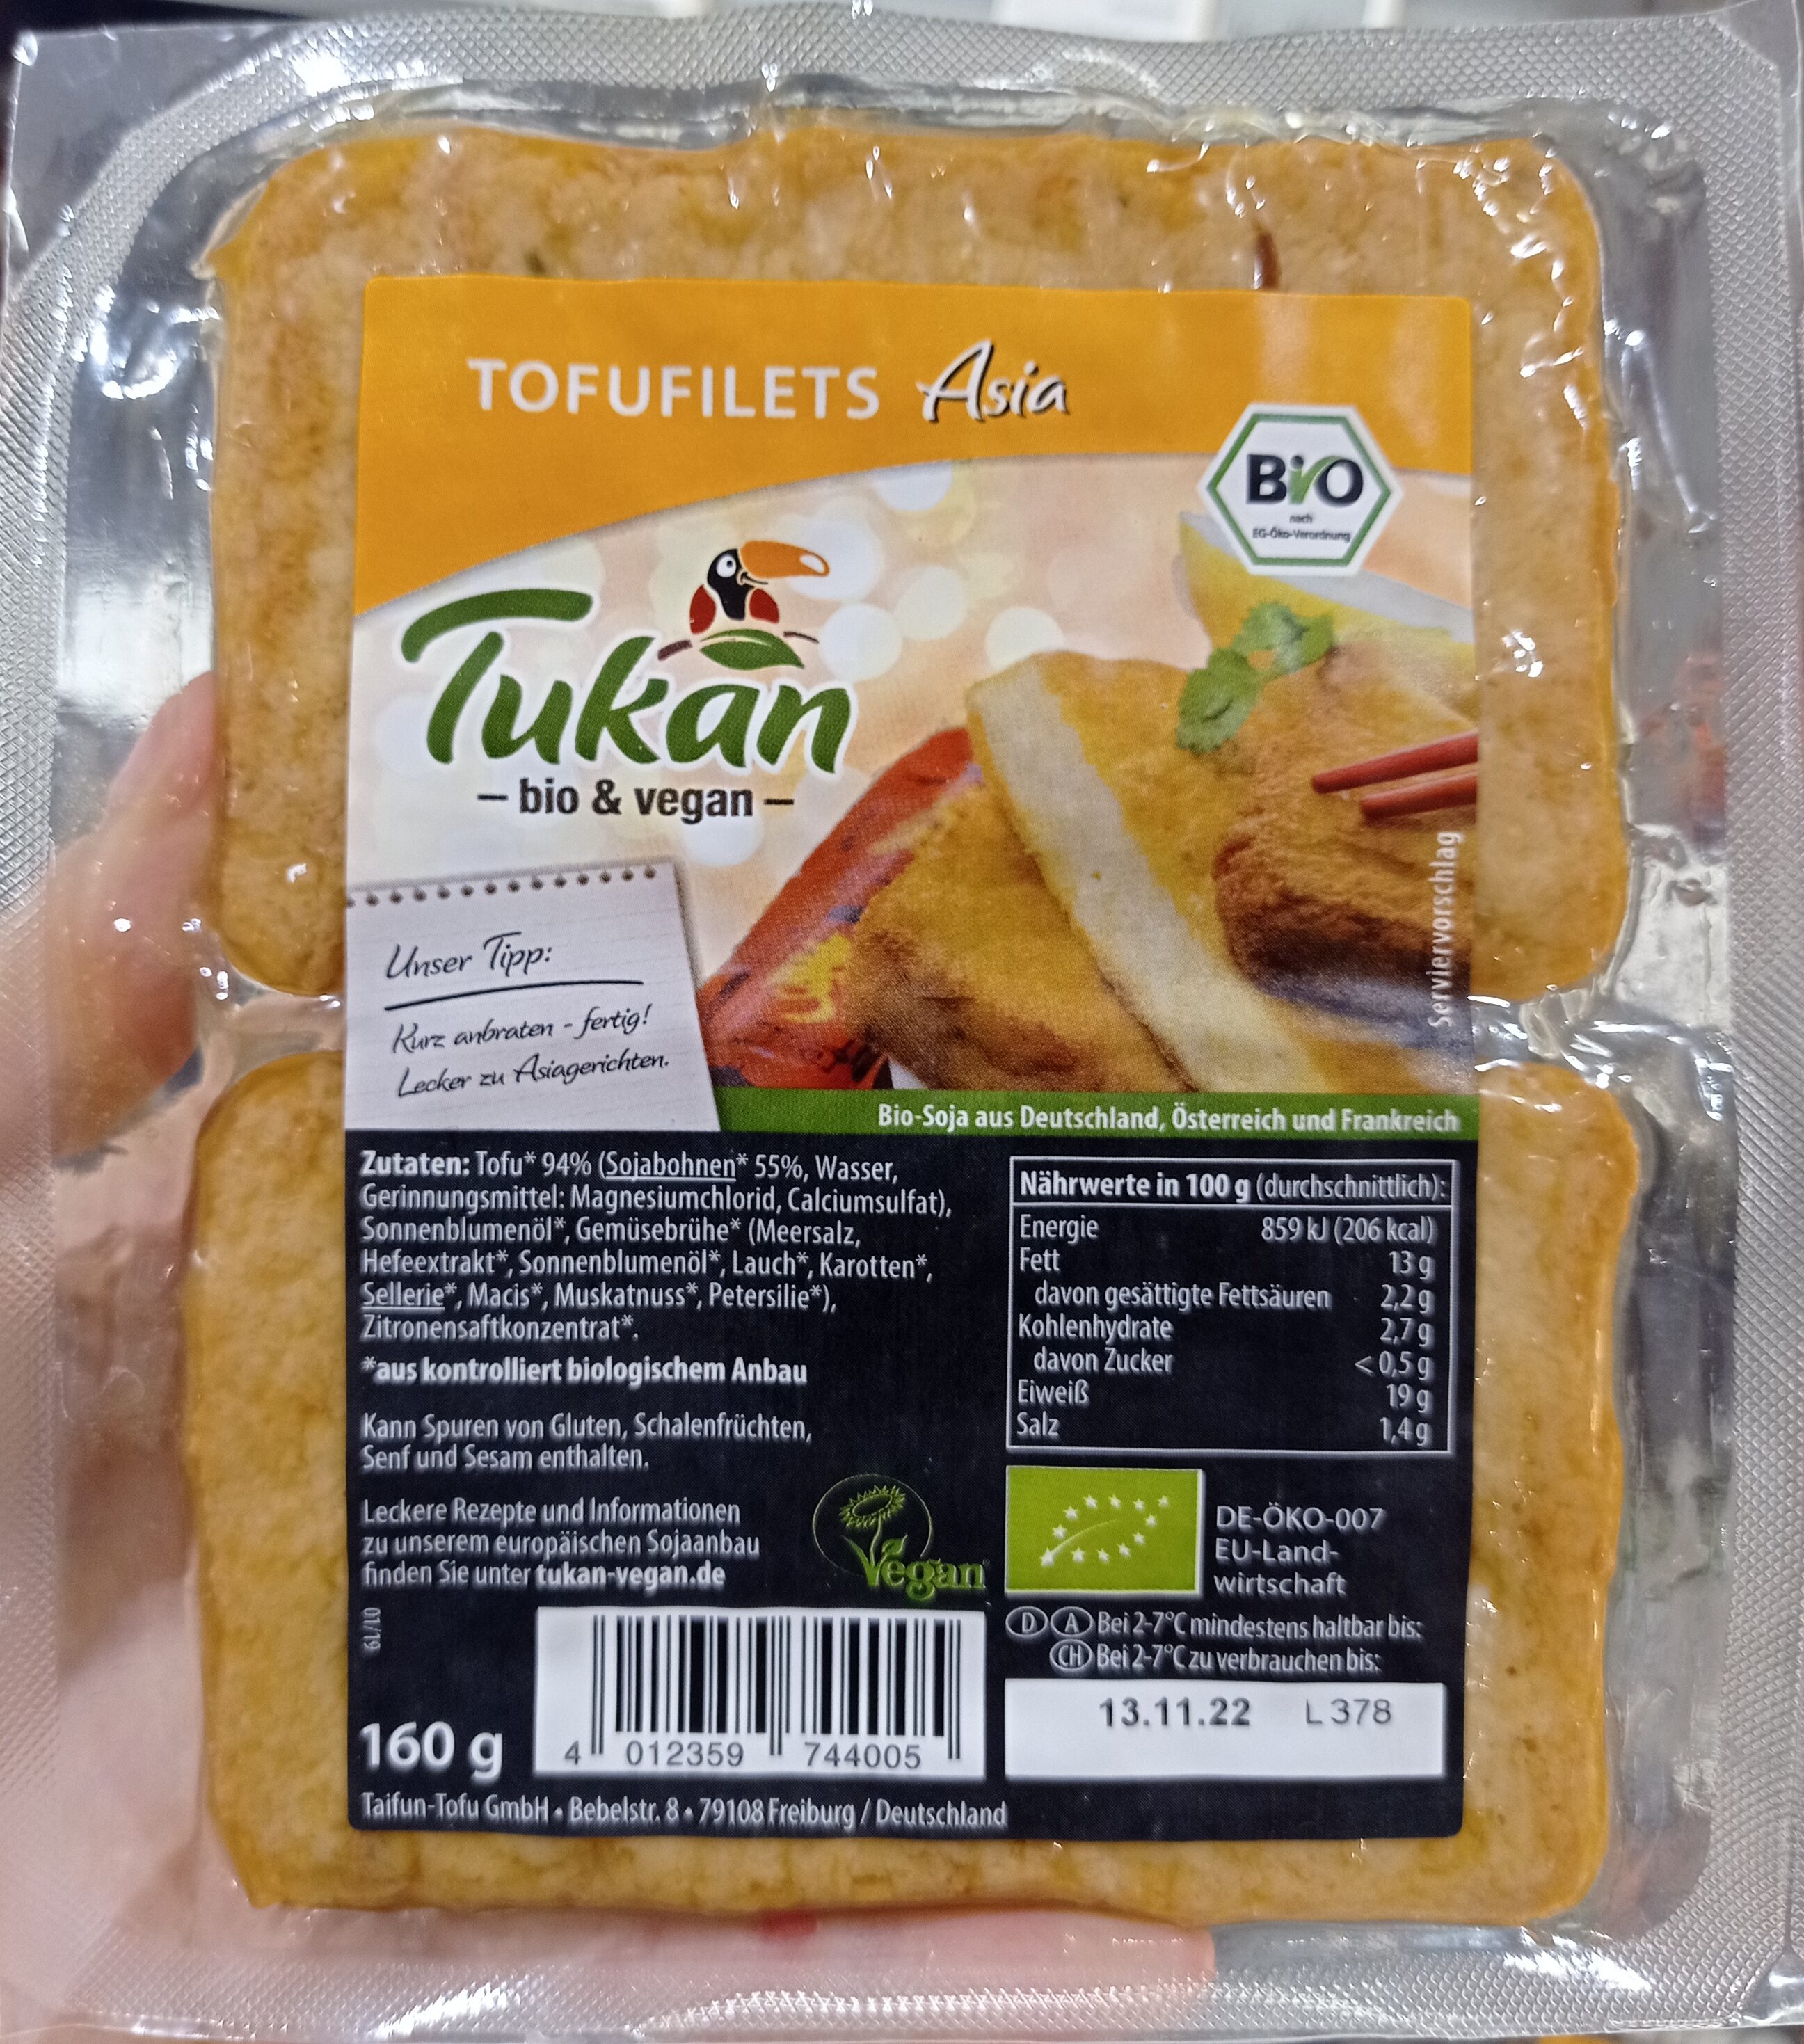 Tofufilets Asia - Product - de